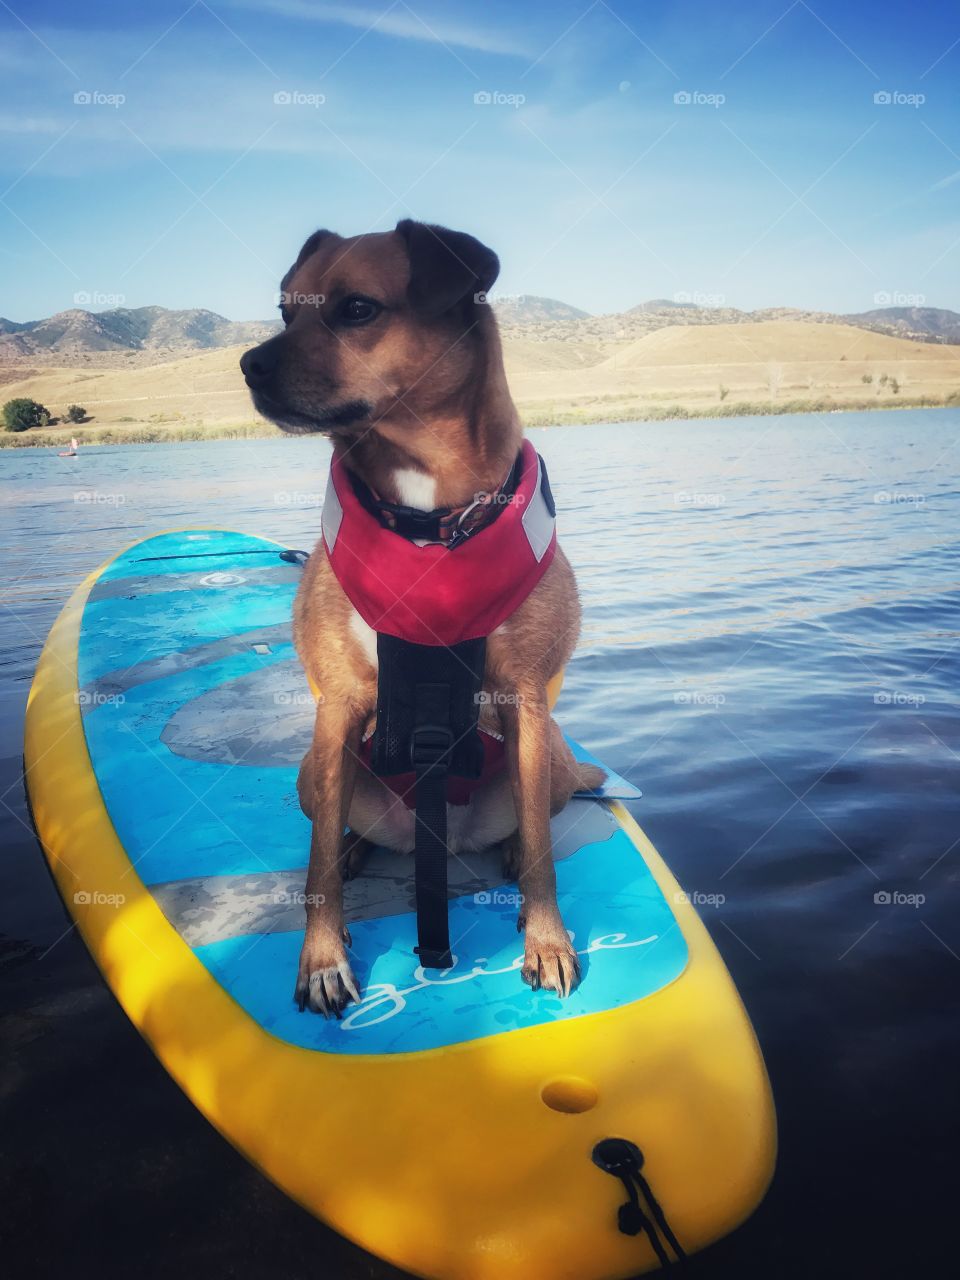 Colorado! Paddle Boarding!